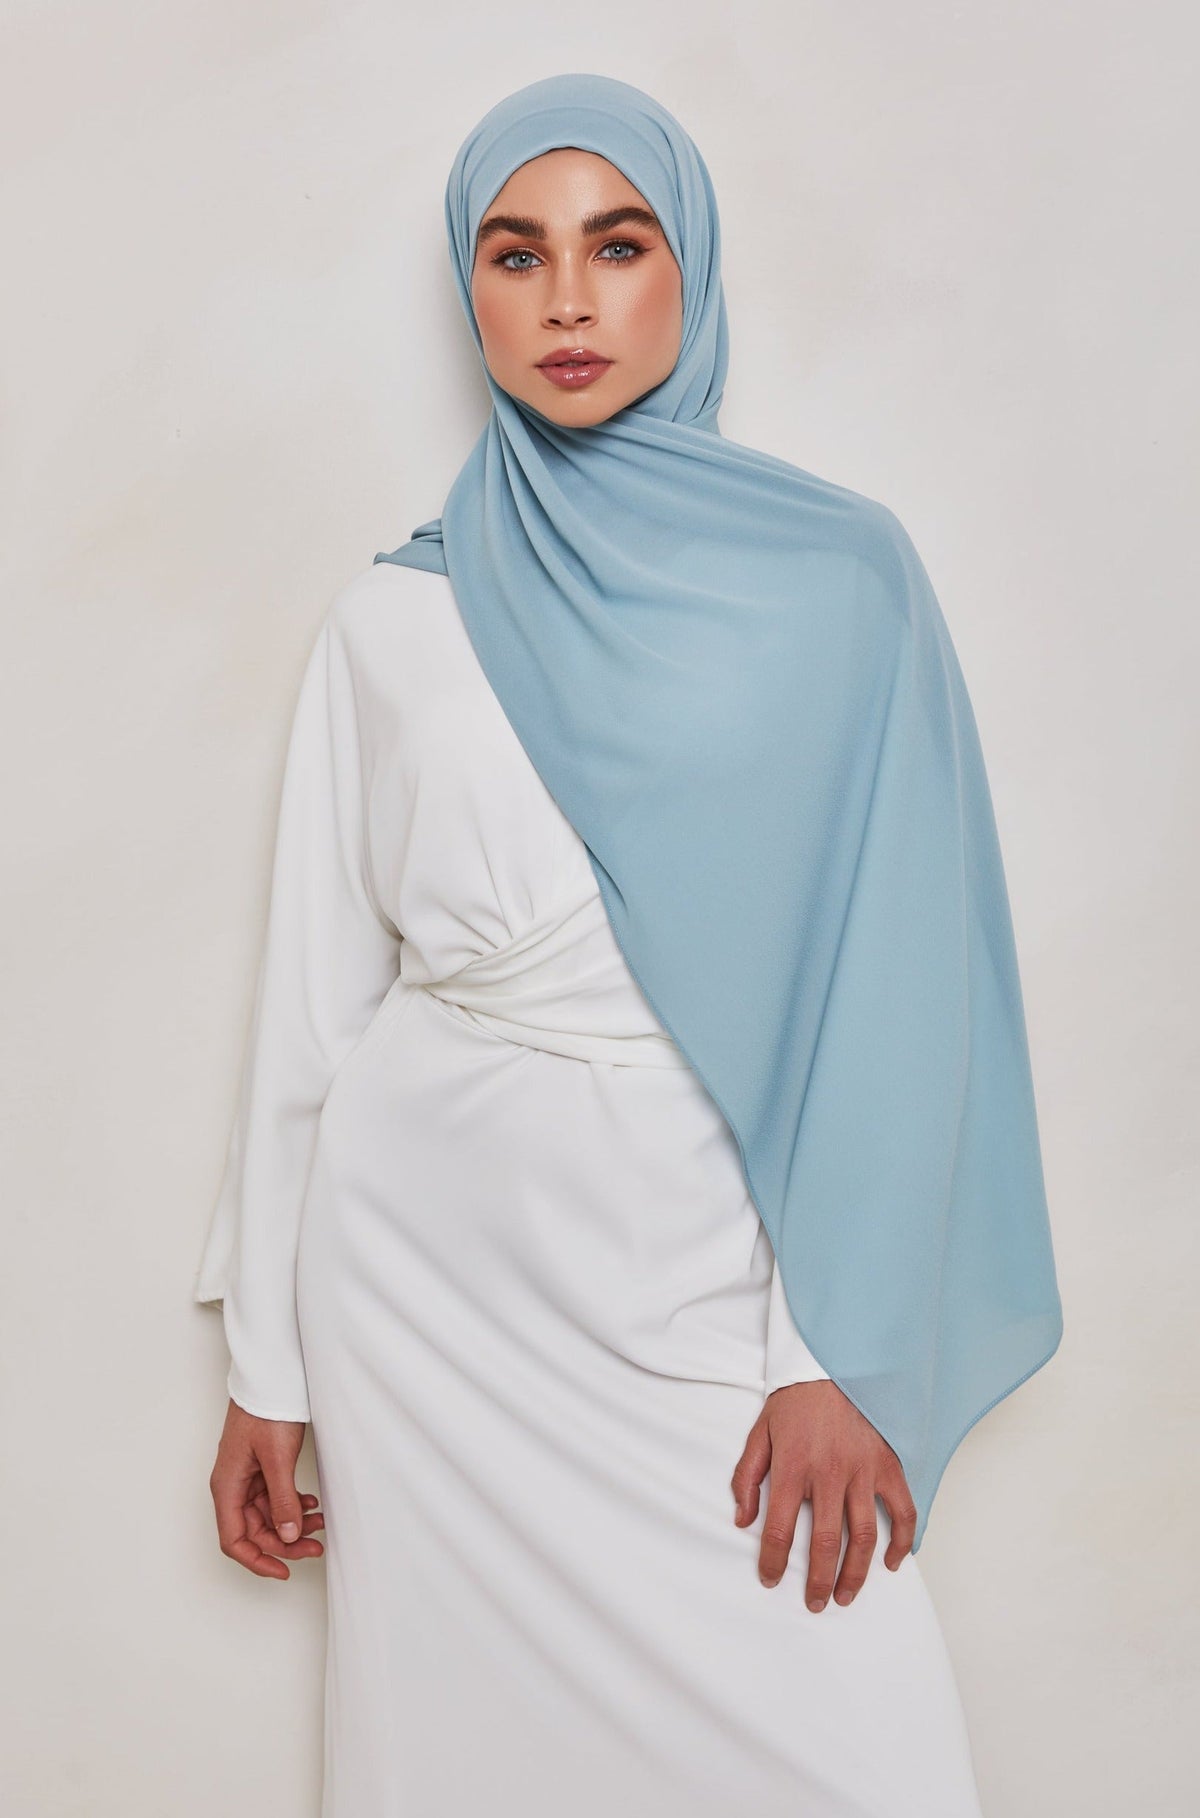 TEXTURE Everyday Chiffon Hijab - Sea Ya epschoolboard 